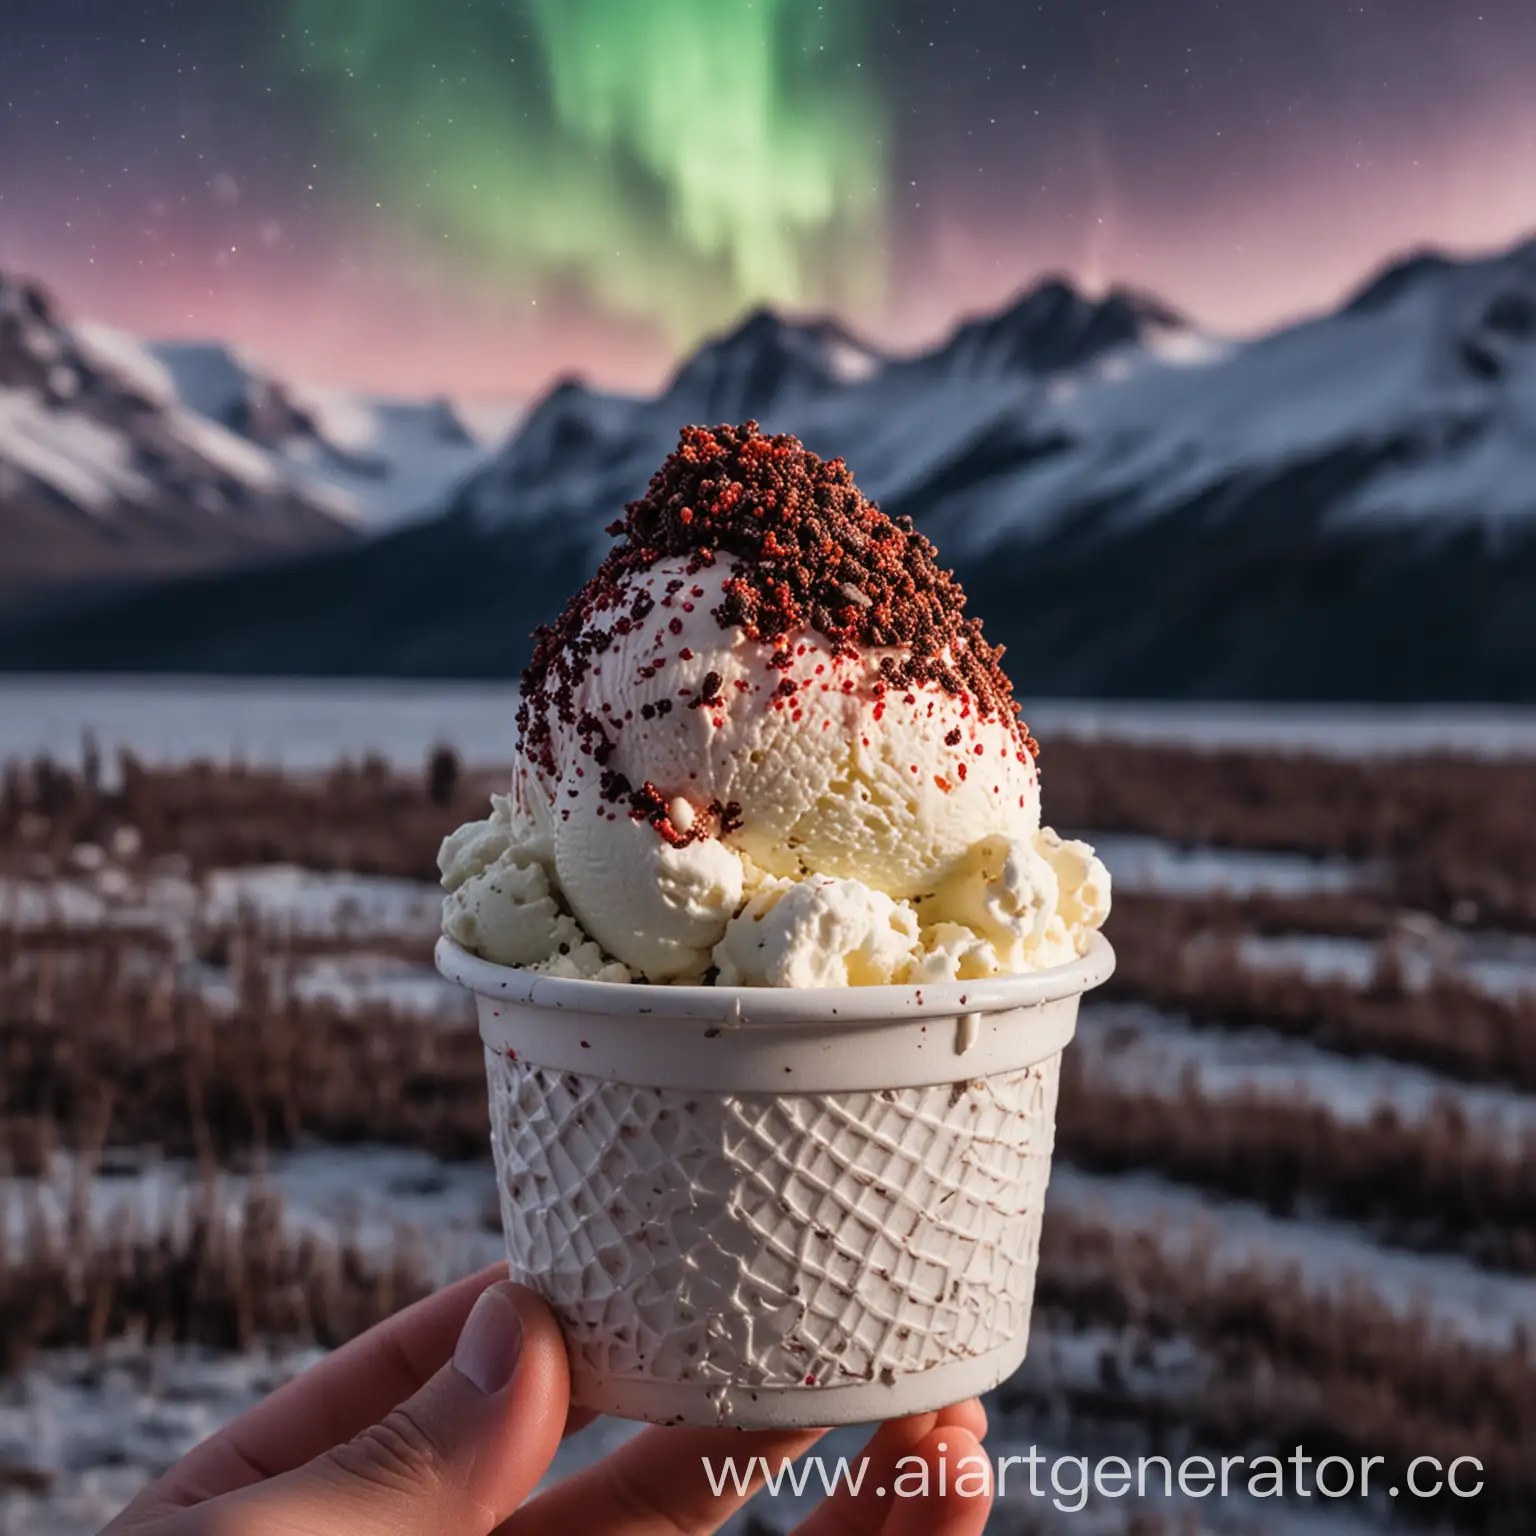 стаканчик мороженного белого цвета без логотипов, мороженное со струшкой вяленного мяса дикого оленя, в куе человека, на заднем фоне северное сияние и горы